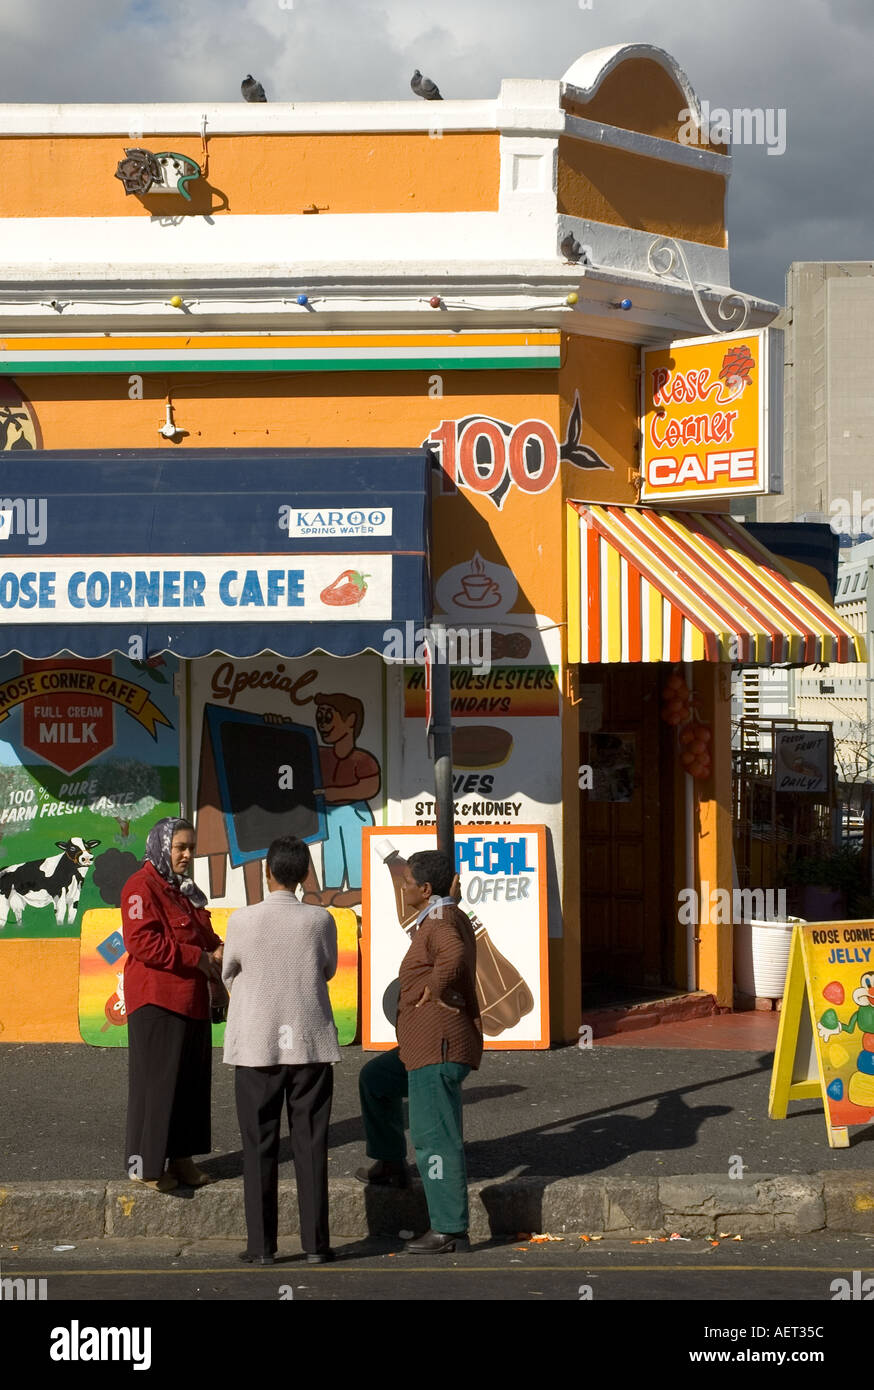 Afrique du sud Péninsule du Cap Cape Town quartier de Malay Bo Kaap Schotsche Kloof 3 femmes en face d'une épicerie de couleur vert Banque D'Images